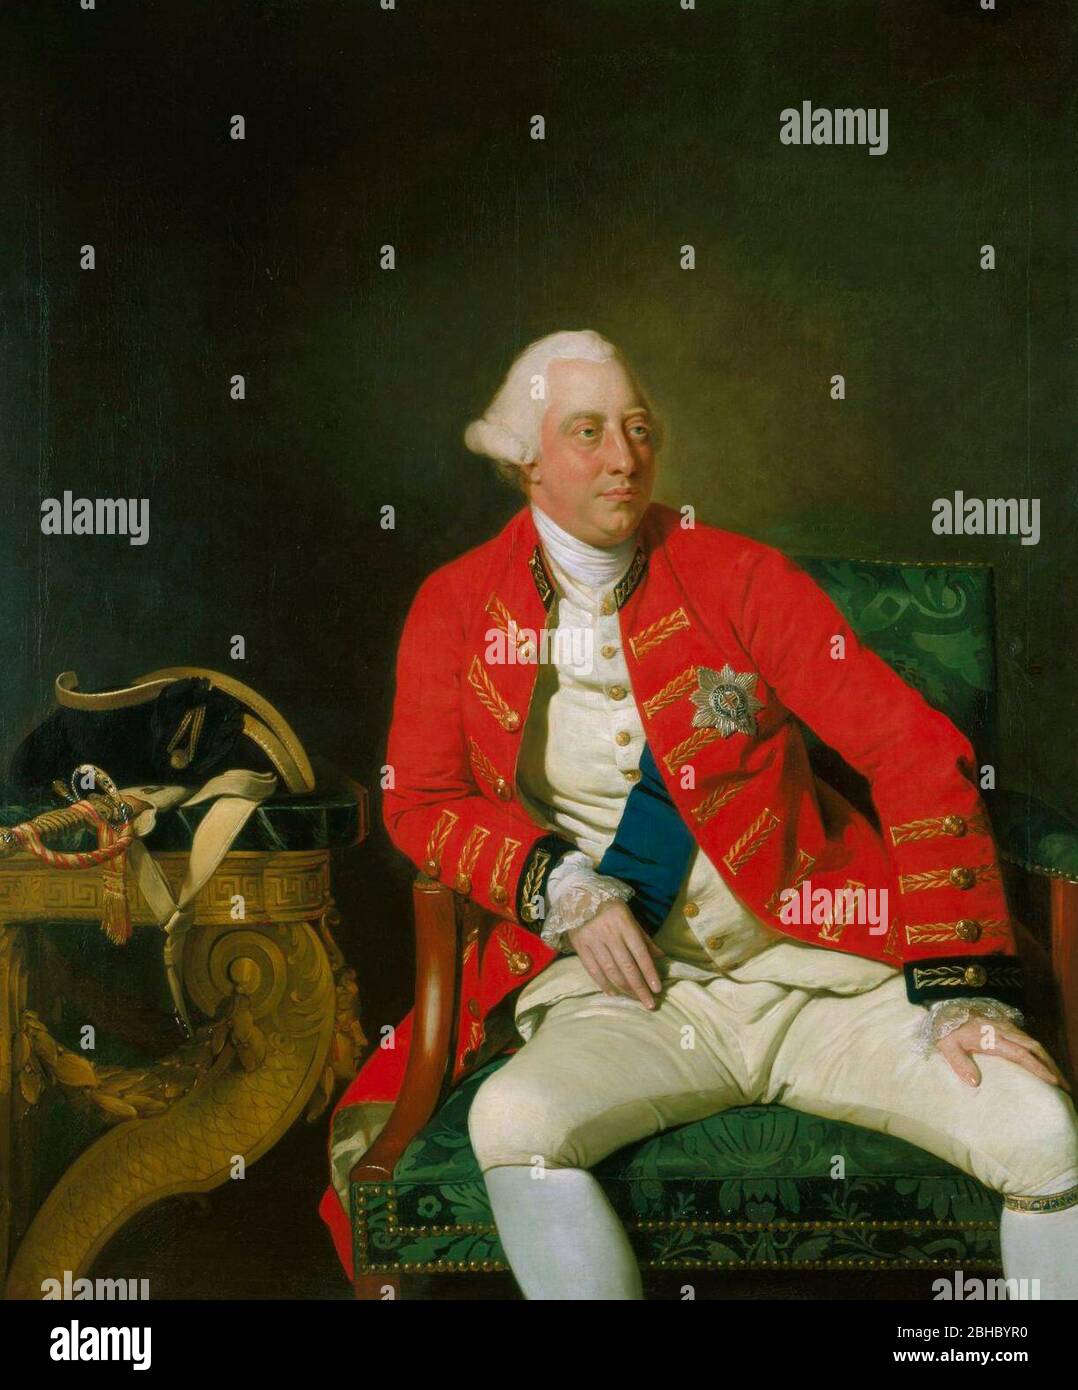 Portrait de George III du Royaume-Uni (1738-1820) - une figure de trois quarts de longueur du roi George III assis dans un manteau de l'officier général avec les rubans et l'étoile du Garter, portant le Garter autour de sa jambe; son chapeau et son épée reposant sur une table voisine. Terminé en 1771, il dépeint le roi à l'âge de 33 ans, avec un regard sérieux constant, un visage sain et grossier, et un calme assuré déleanor. Johan Zoffany, 1771 Banque D'Images